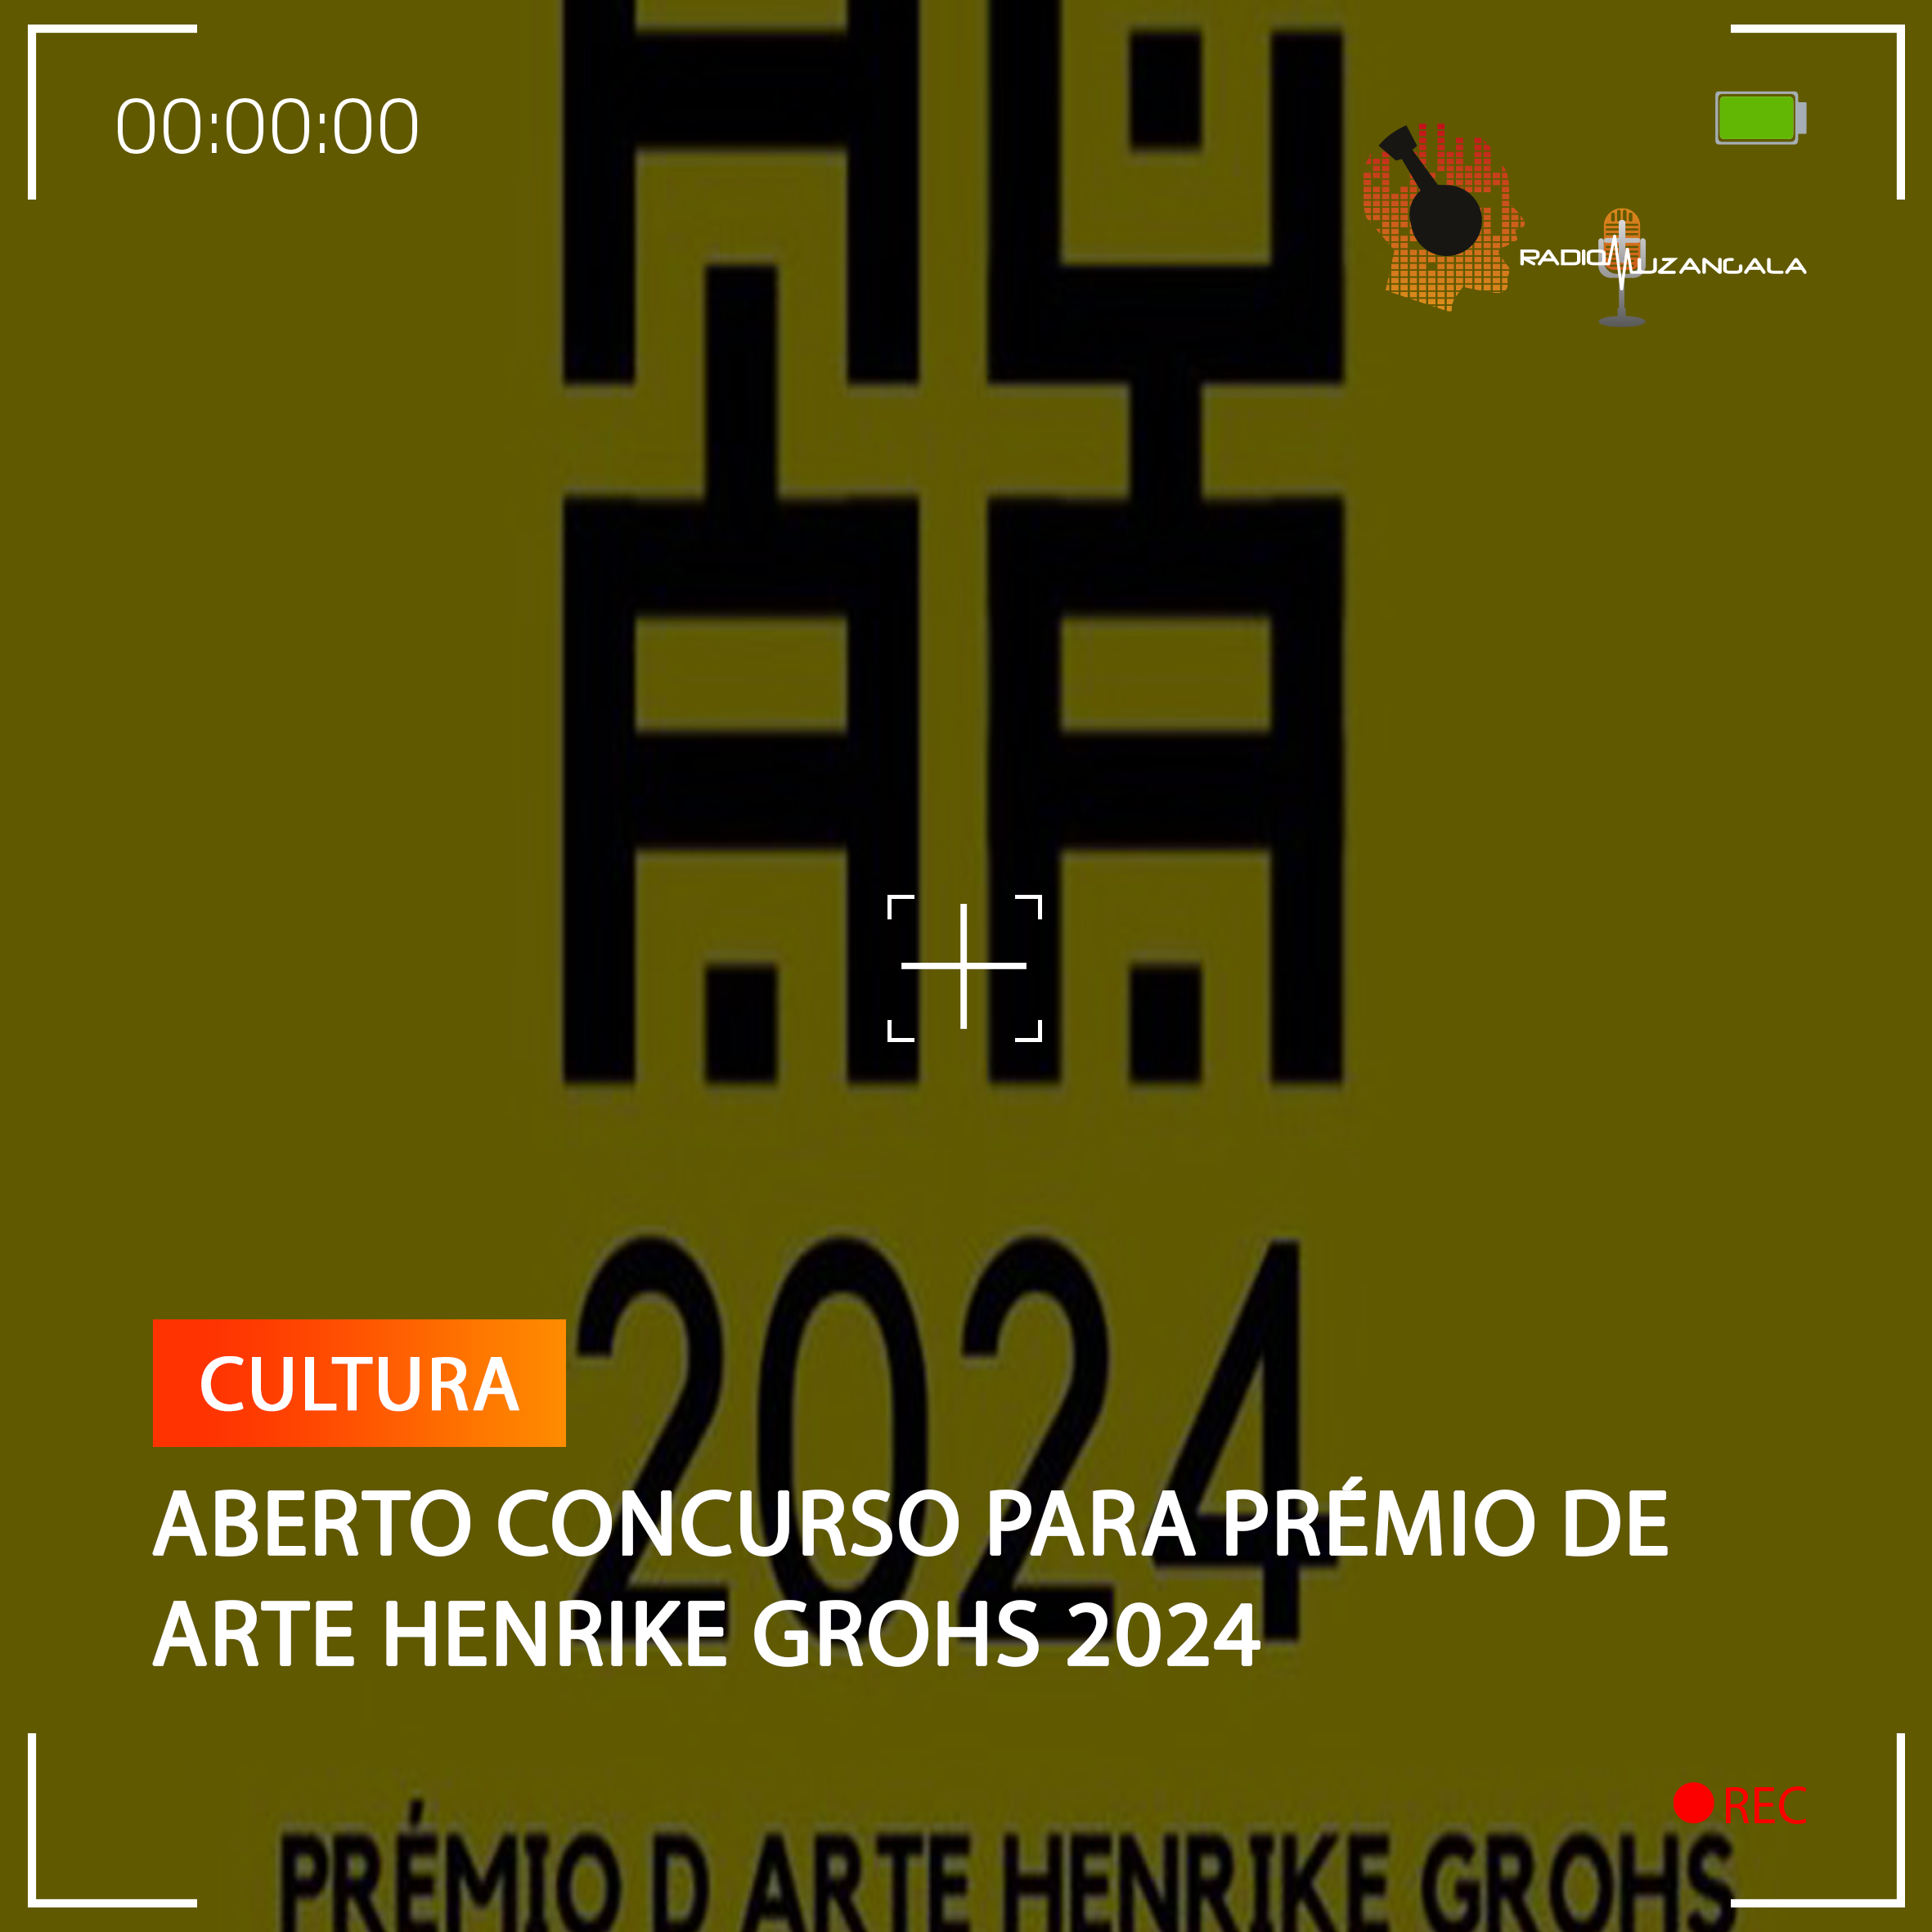  ABERTO CONCURSO PARA PRÉMIO DE ARTE HENRIKE GROHS 2024